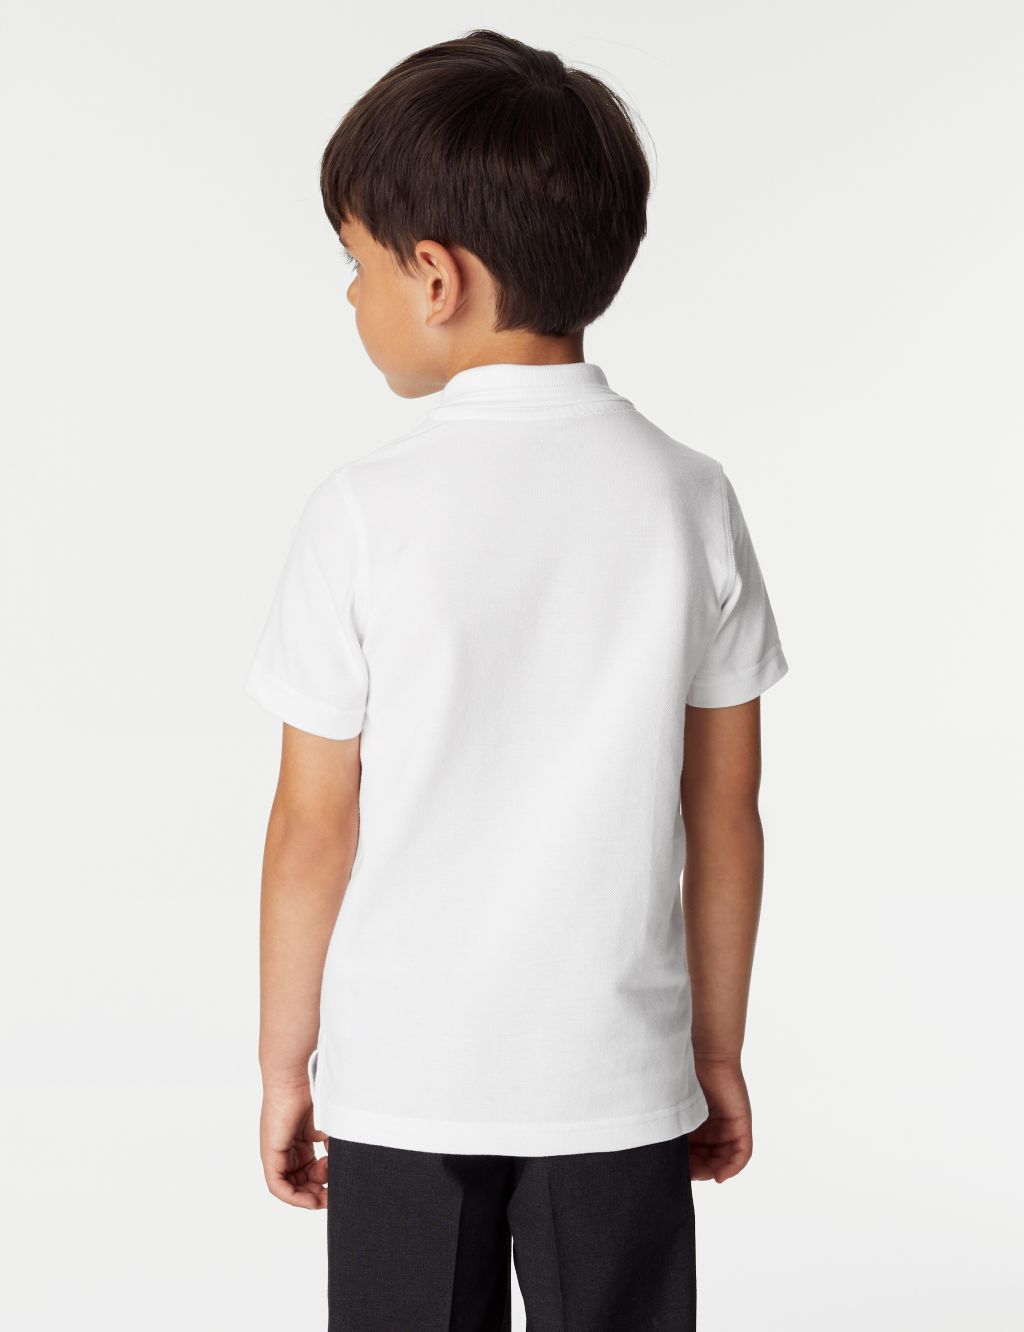 2pk Boys' Slim Fit School Polo Shirts (2-16 Yrs) image 4